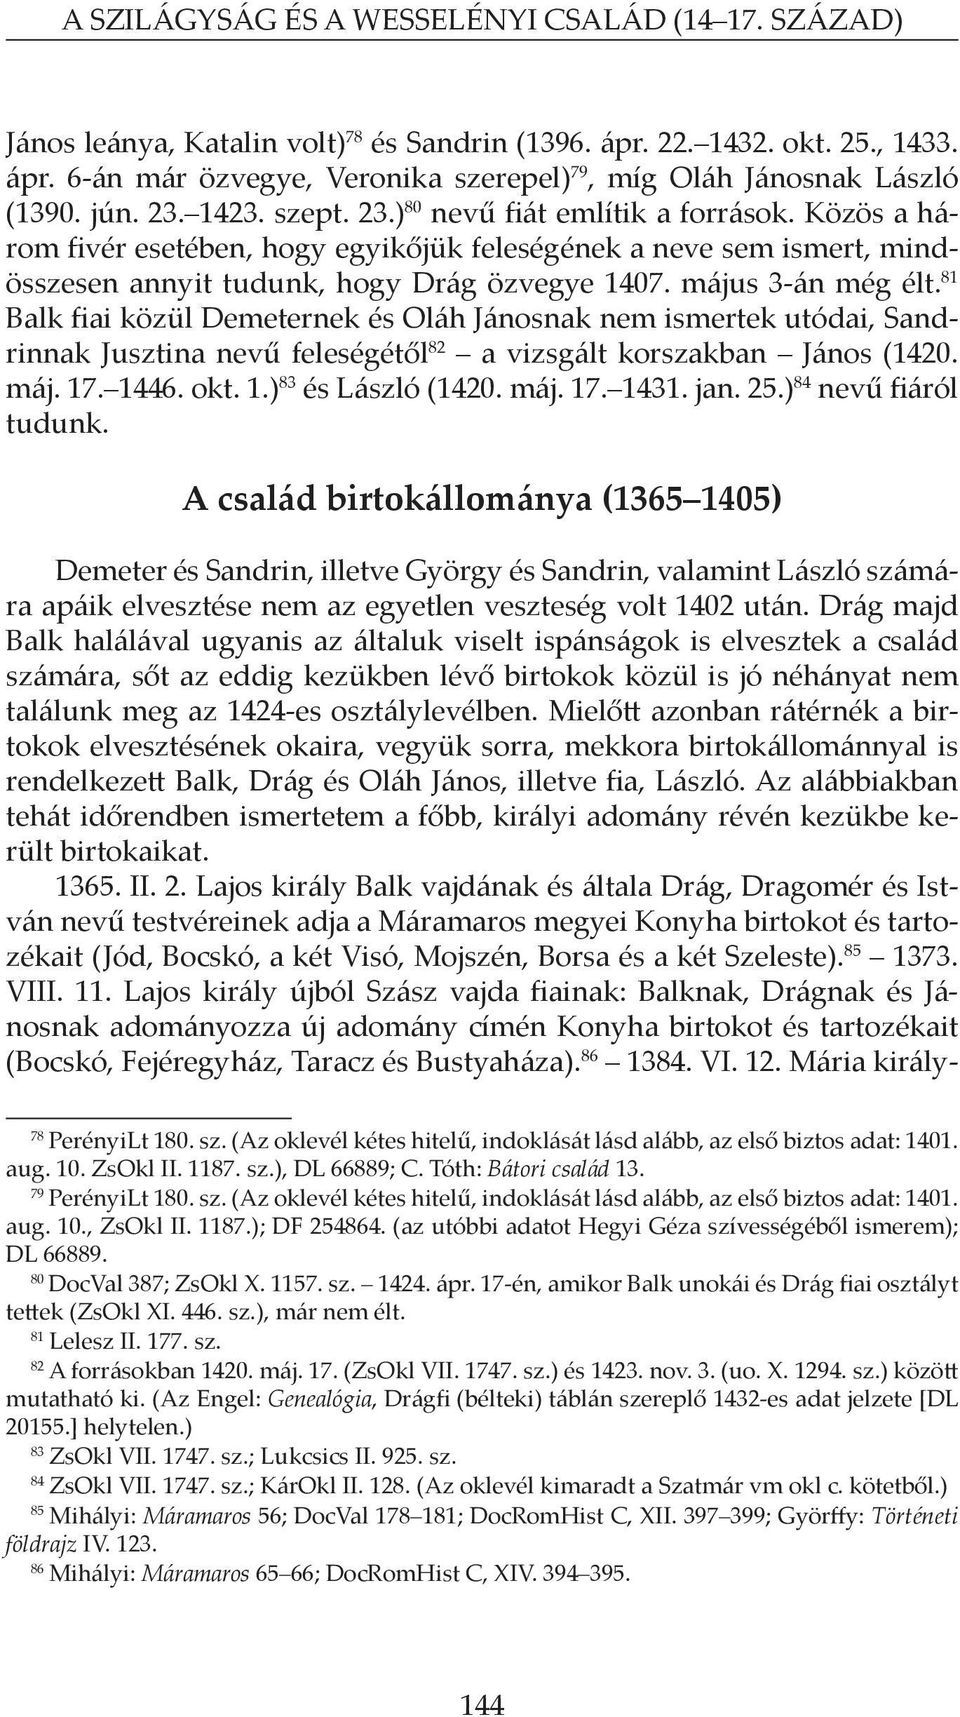 május 3-án még élt. 81 Balk fiai közül Demeternek és Oláh Jánosnak nem ismertek utódai, Sandrinnak Jusztina nevű feleségétől 82 a vizsgált korszakban János (1420. máj. 17. 1446. okt. 1.) 83 és László (1420.